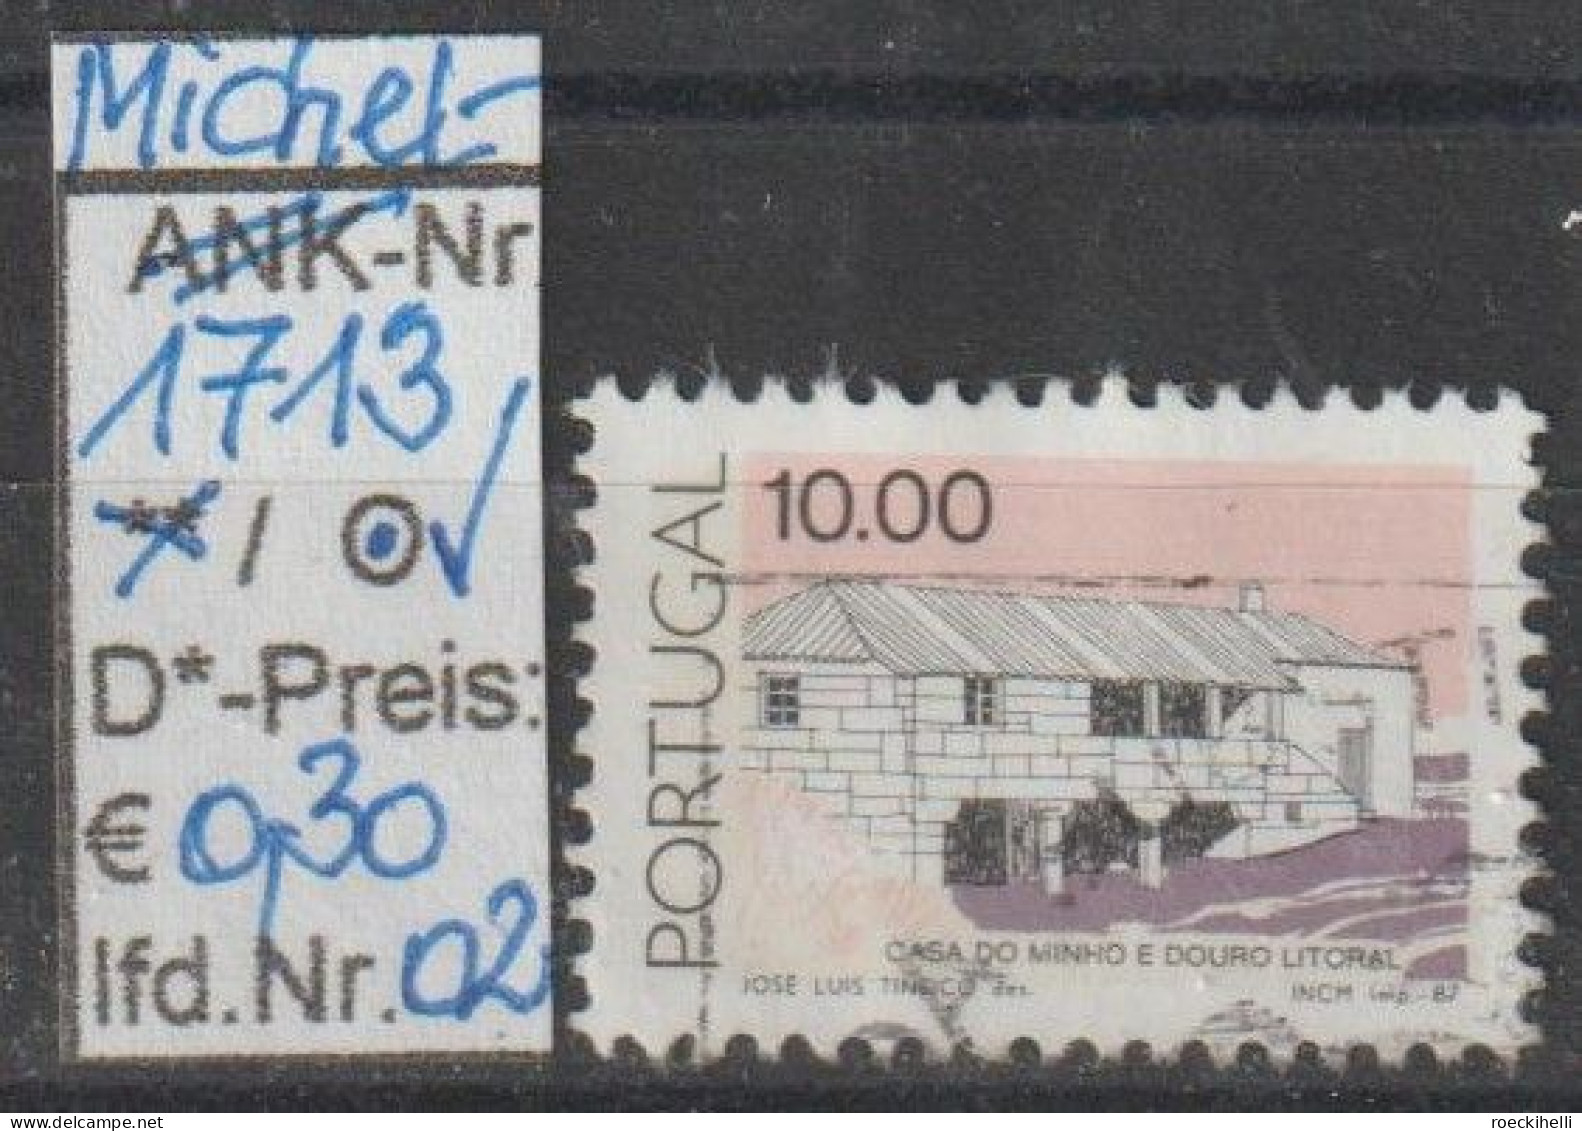 1987 - PORTUGAL - FM/DM "Traditionelle Architektur" 10,00 E Mehrf. - O Gestempelt - S.Scan (port 1713o 01-02) - Oblitérés